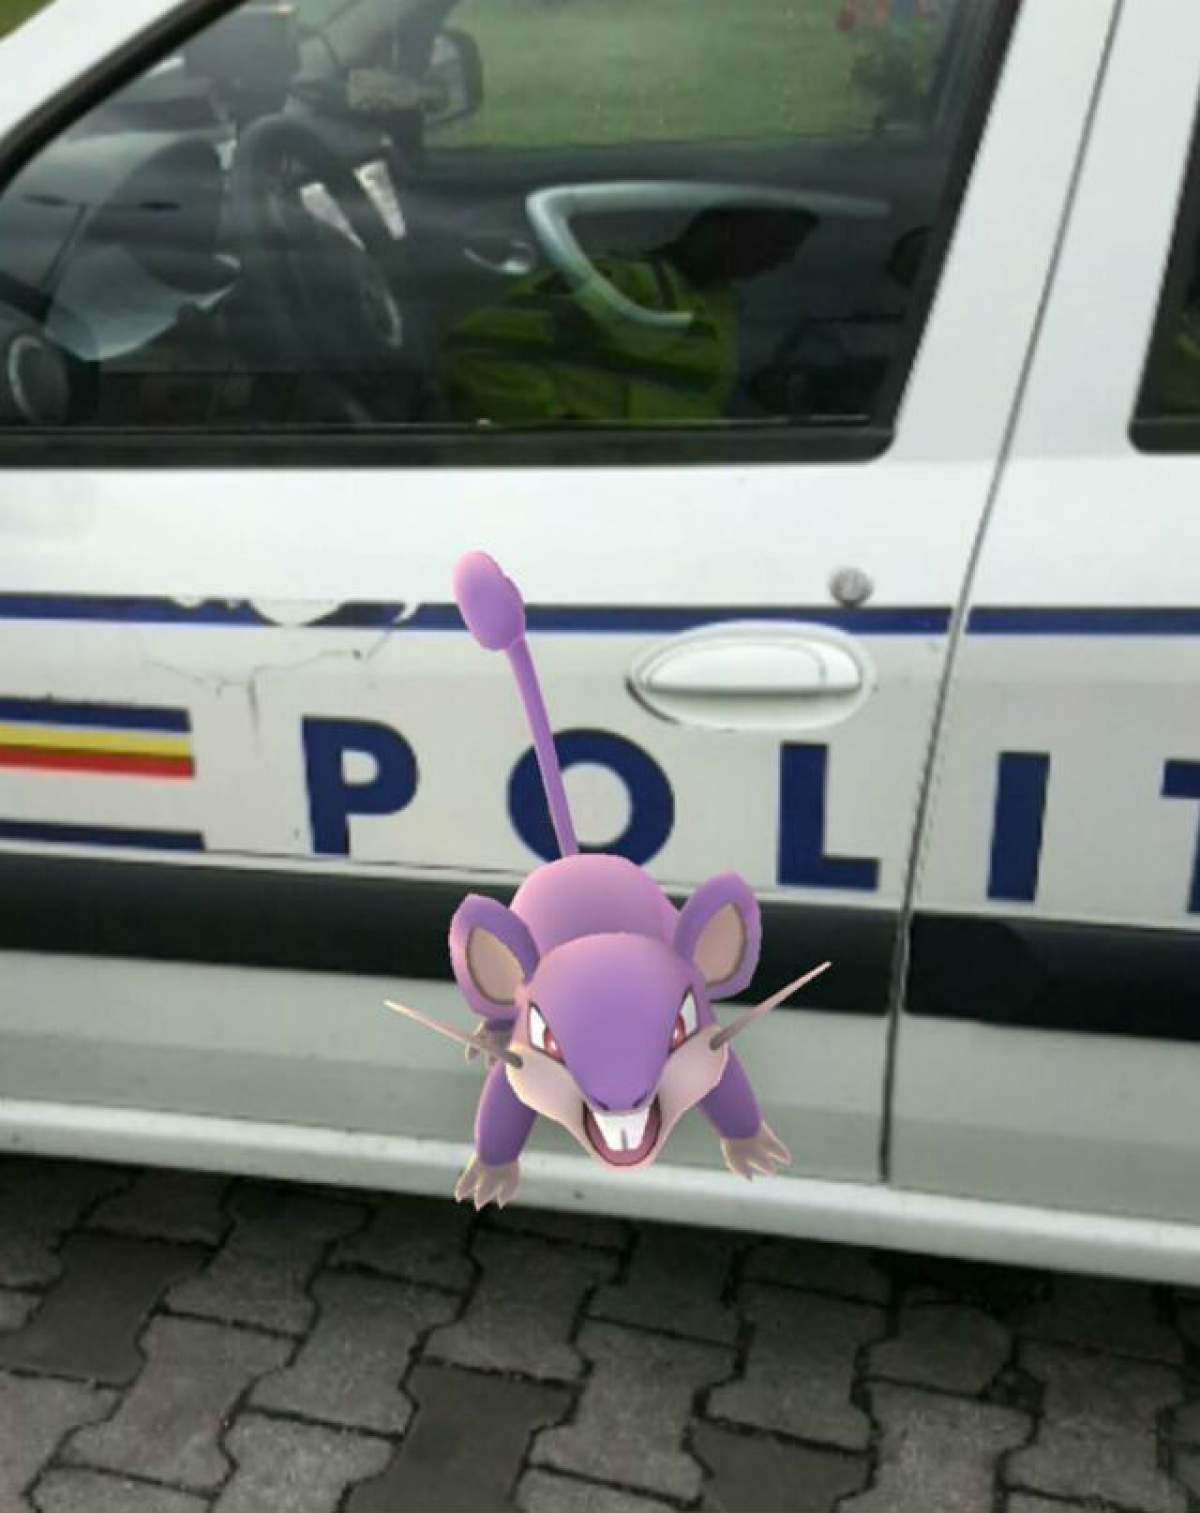 Poliţistul pamfletar, reacţia după ce a prins un bărbat în timp ce vâna un pokemon lângă maşina sa de serviciu